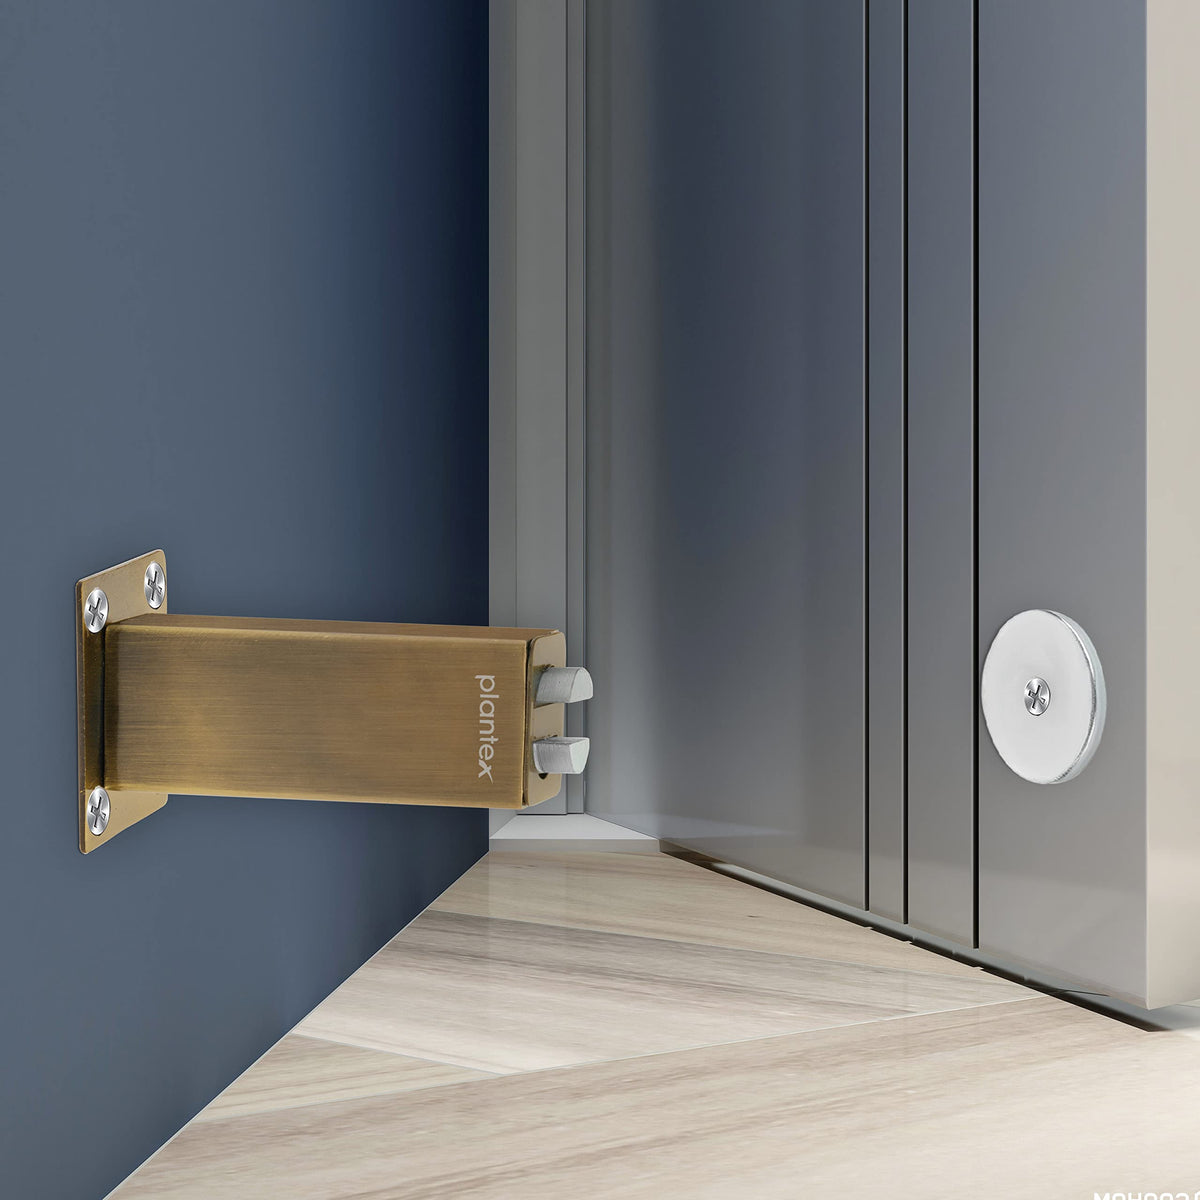 Plantex Stainless Steel Wall-Mounted Magnetic Door Stopper/Door Magnets to Hold Door/Door Catcher for Wooden Door - Pack of 1 (Brass Antique)